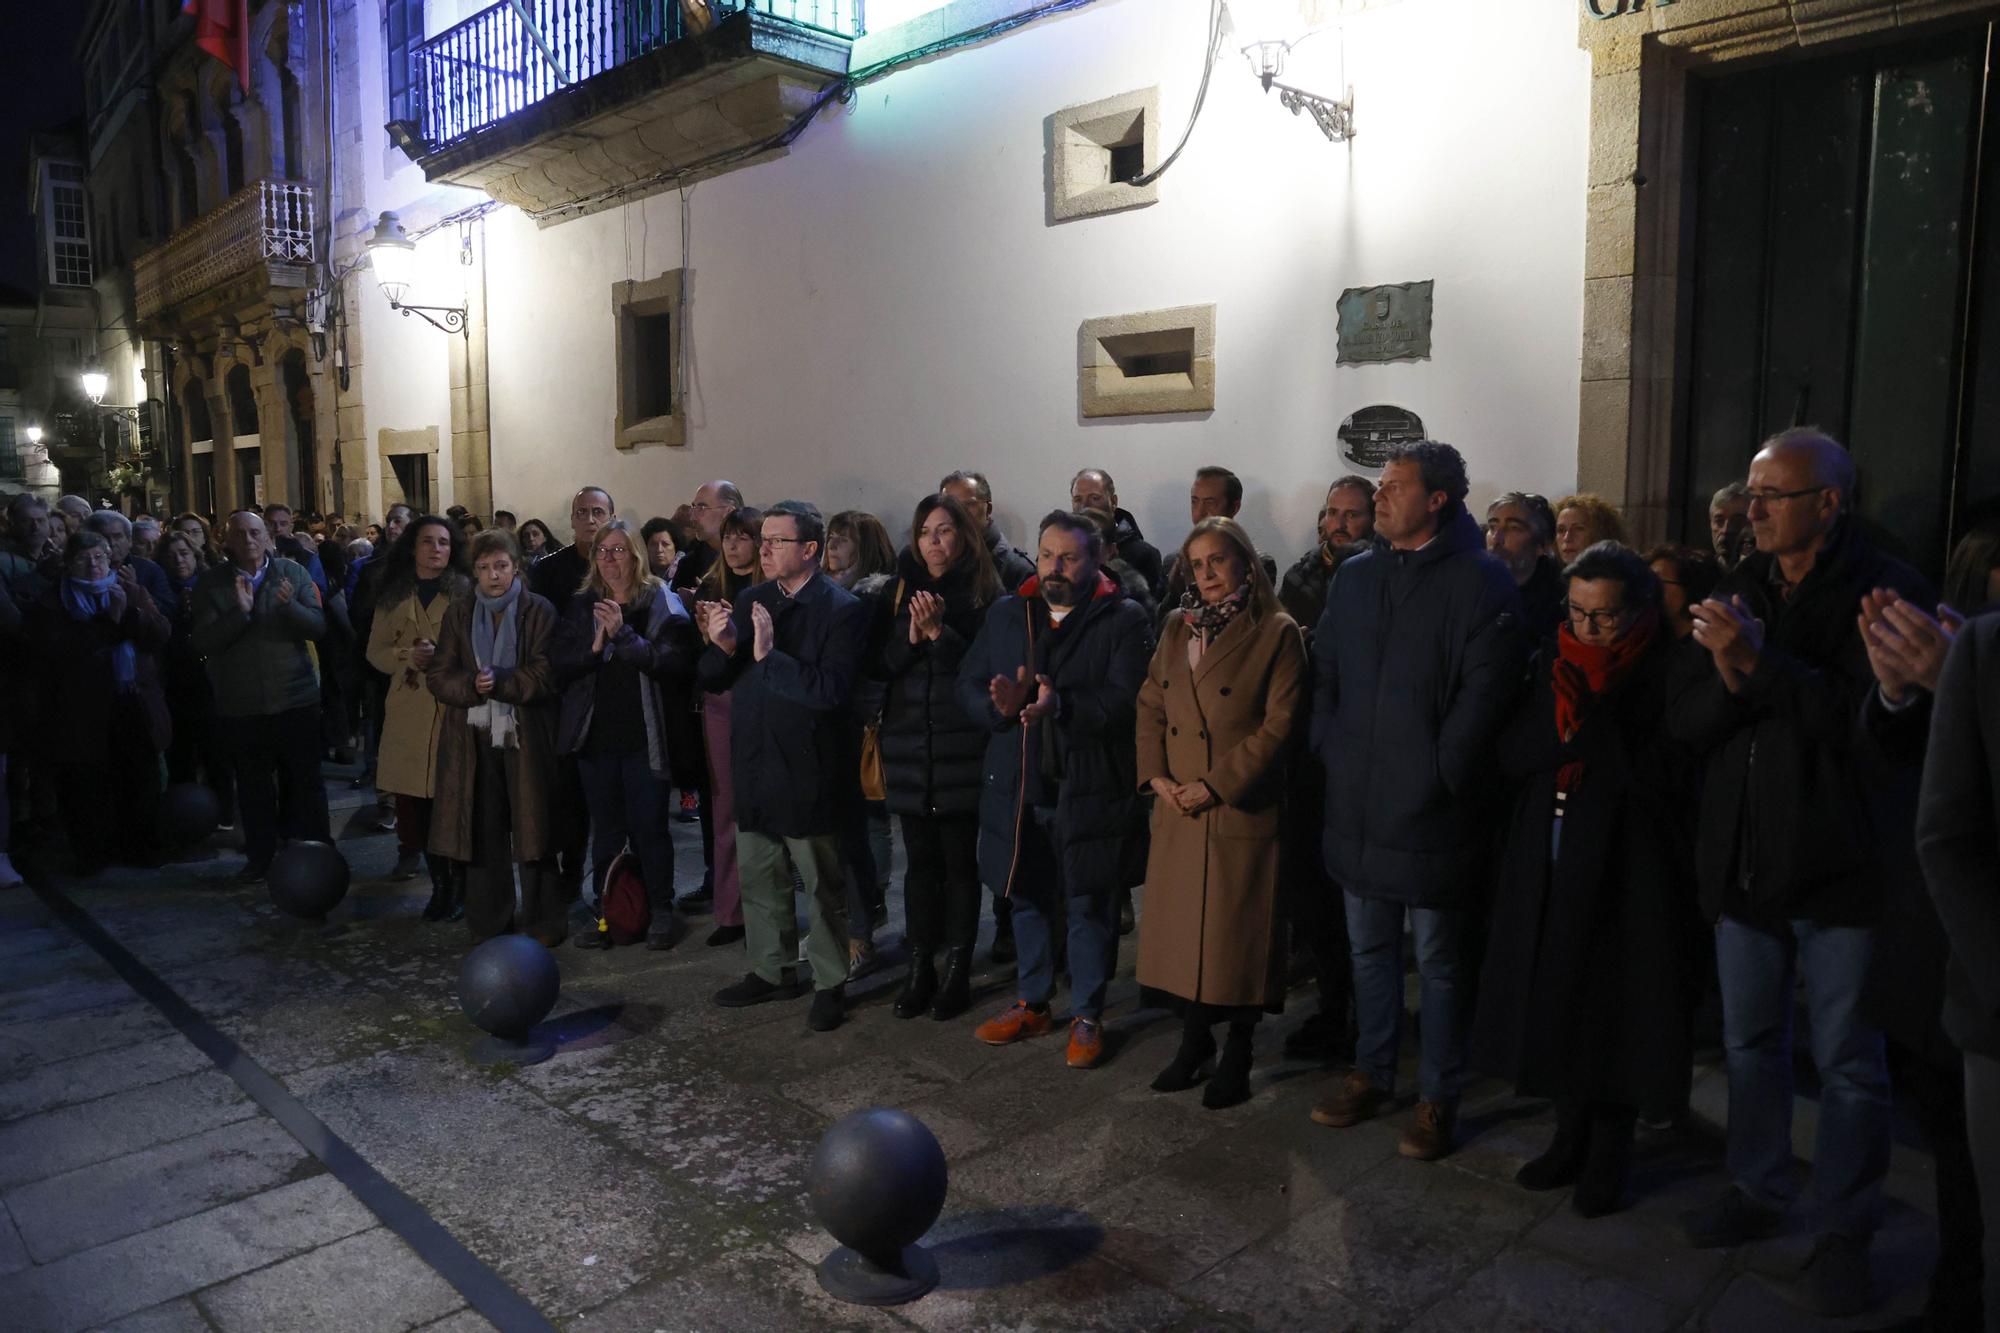 El crimen de Baiona, el primer asesinato machista del año en Galicia